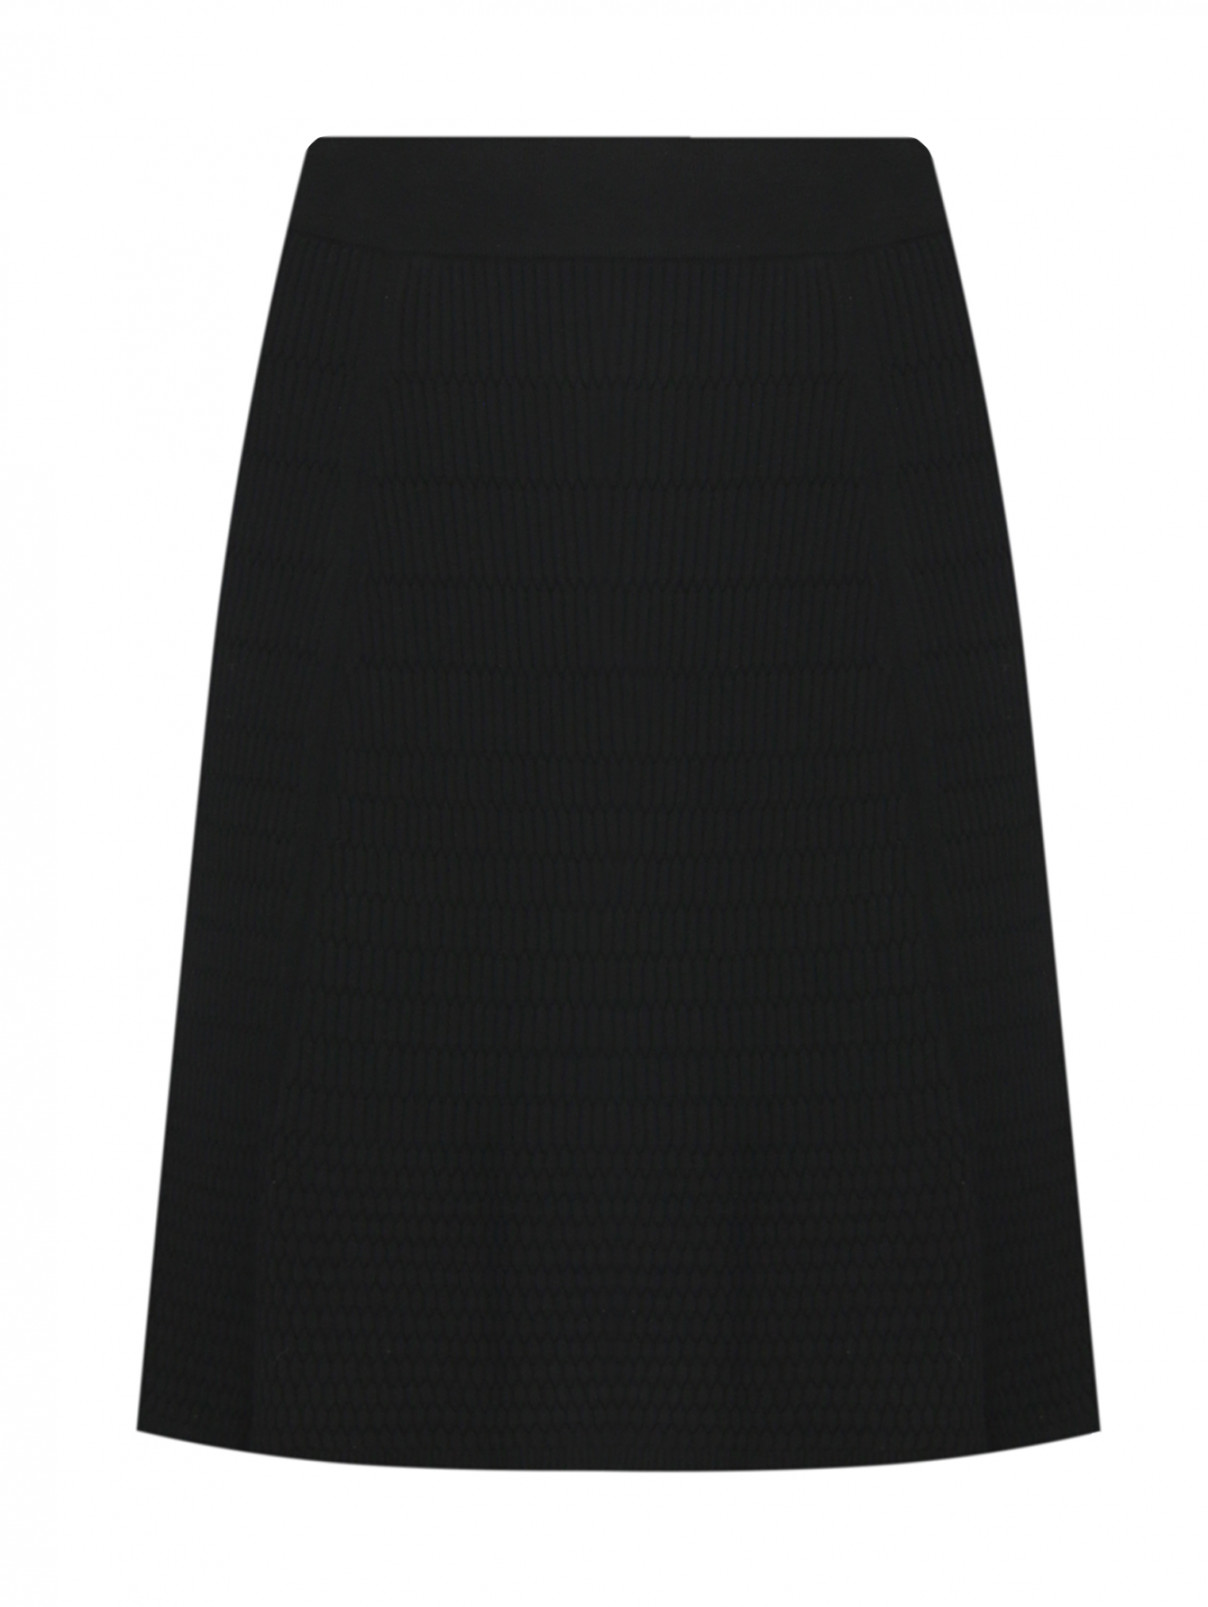 Трикотажная юбка на резинке Kenzo  –  Общий вид  – Цвет:  Черный